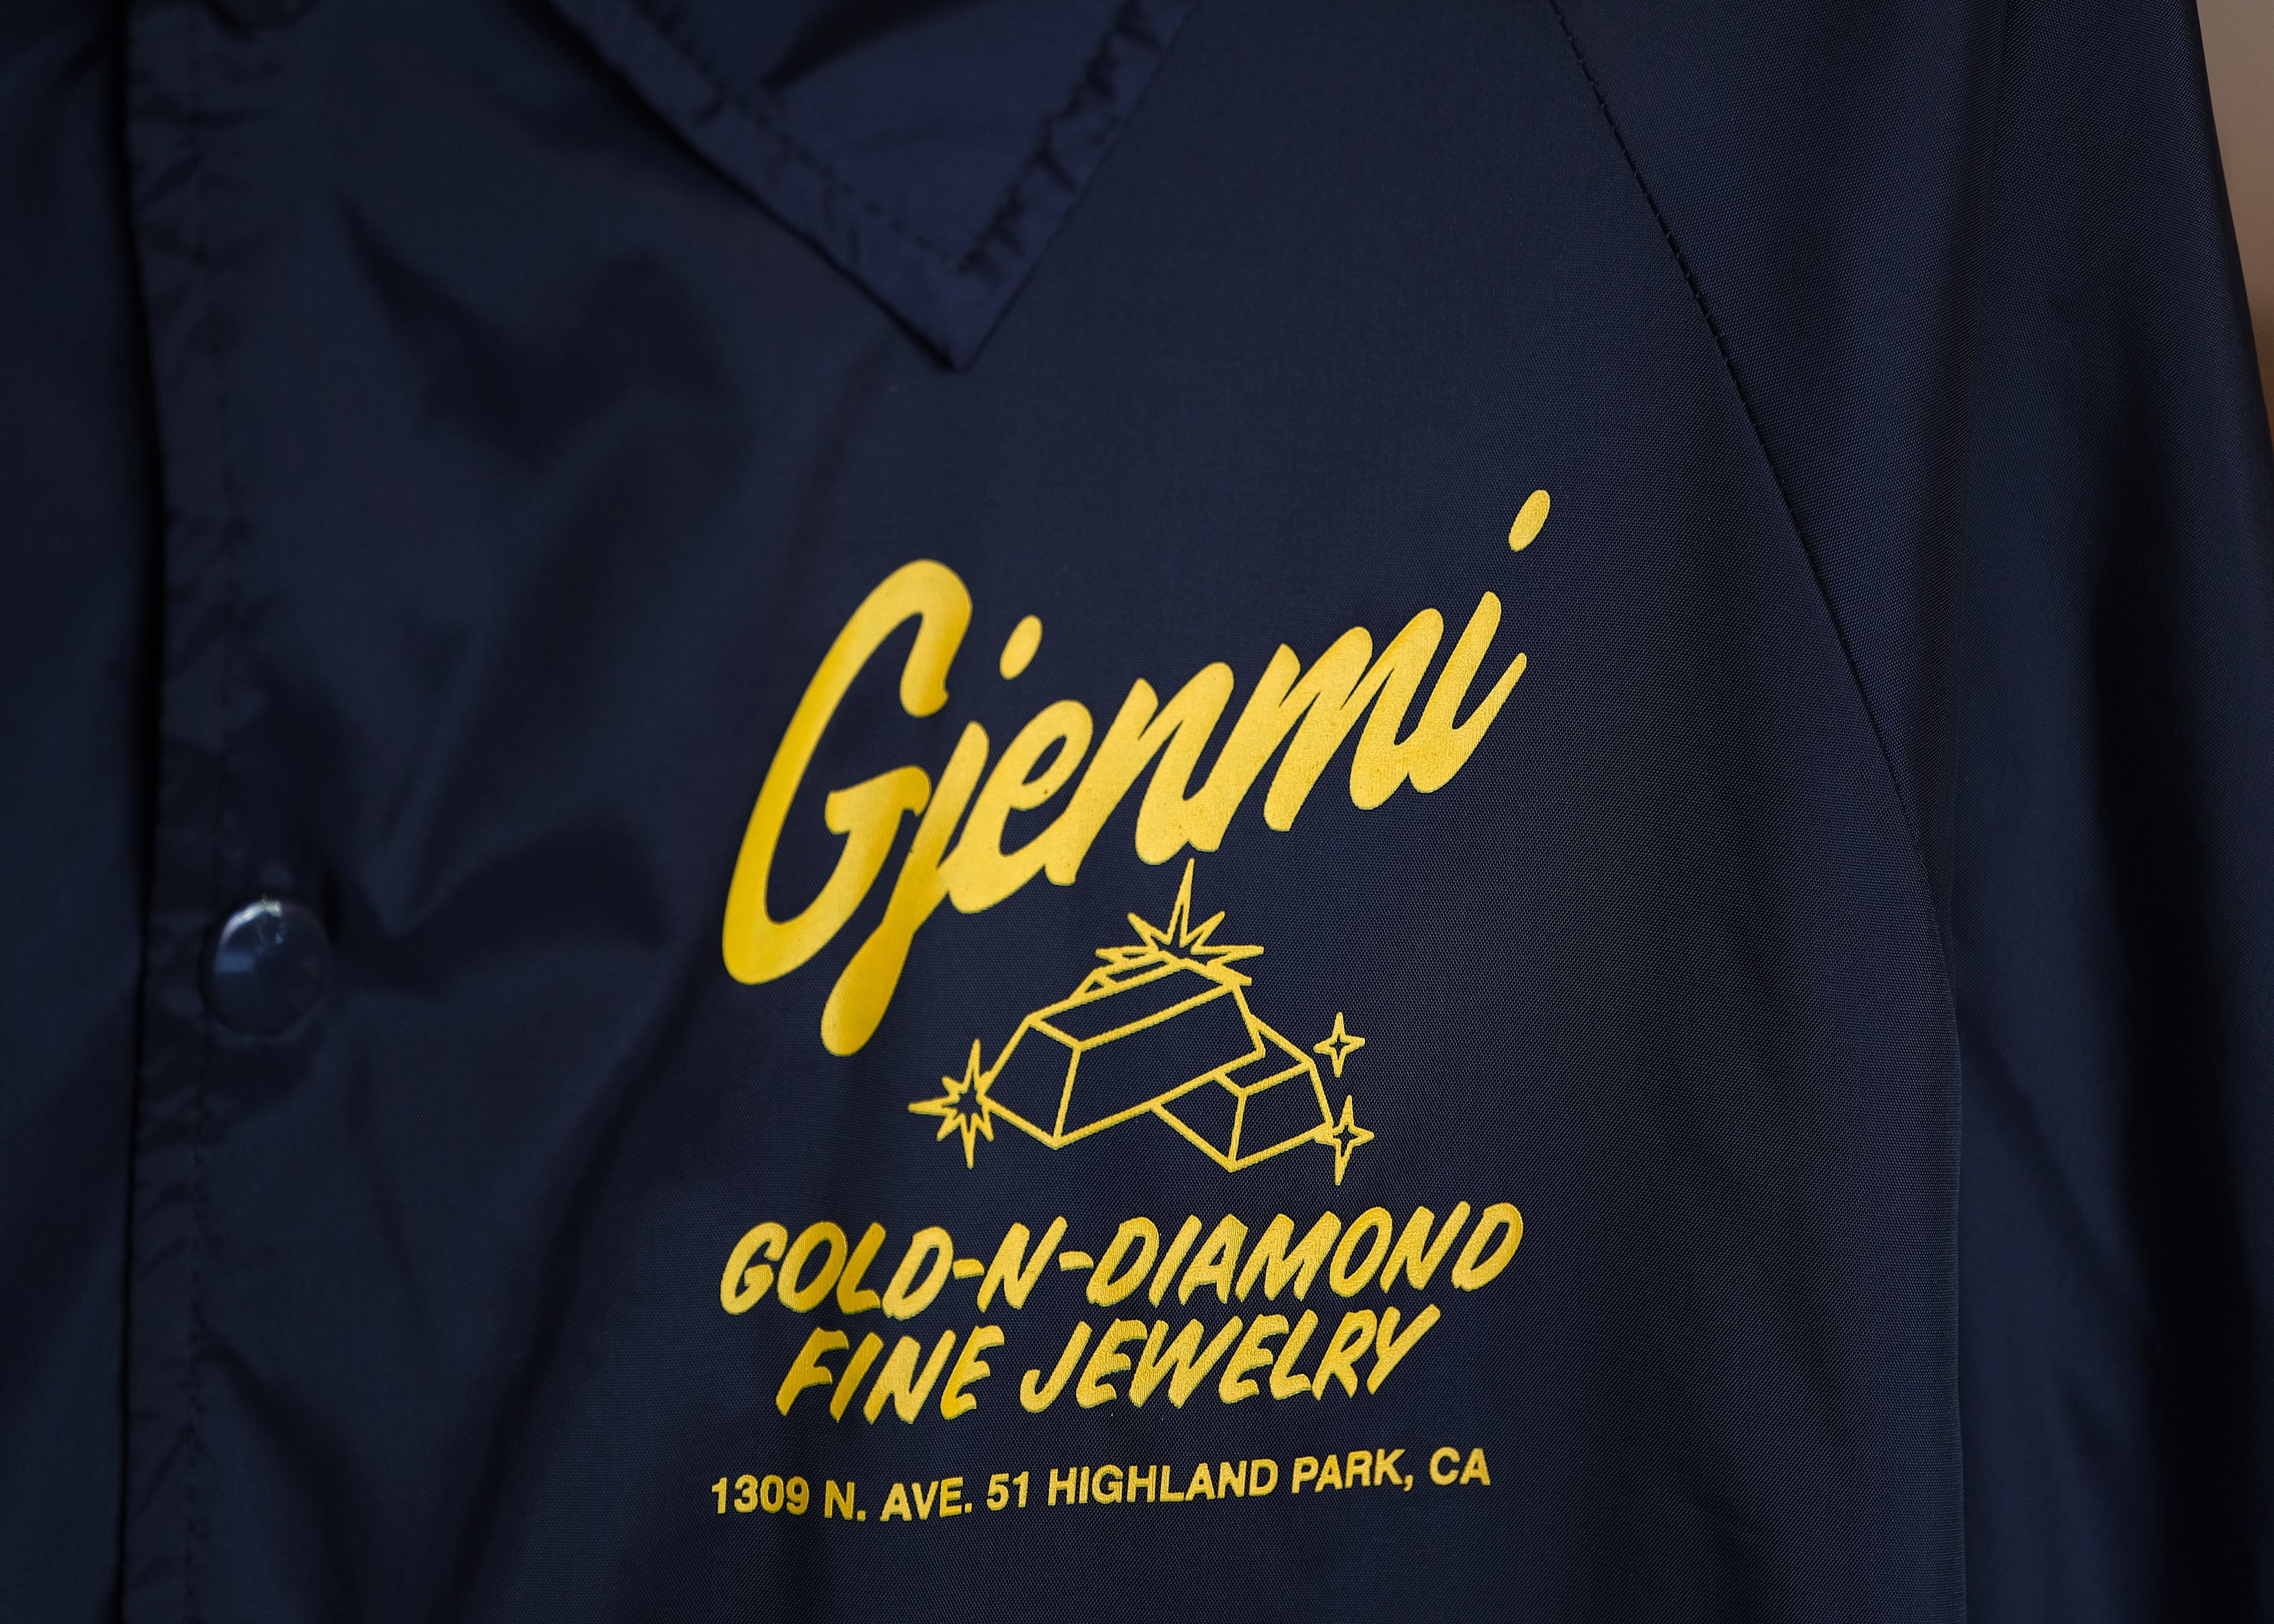 Gjenmi Coaches Jacket | Ready To Ship